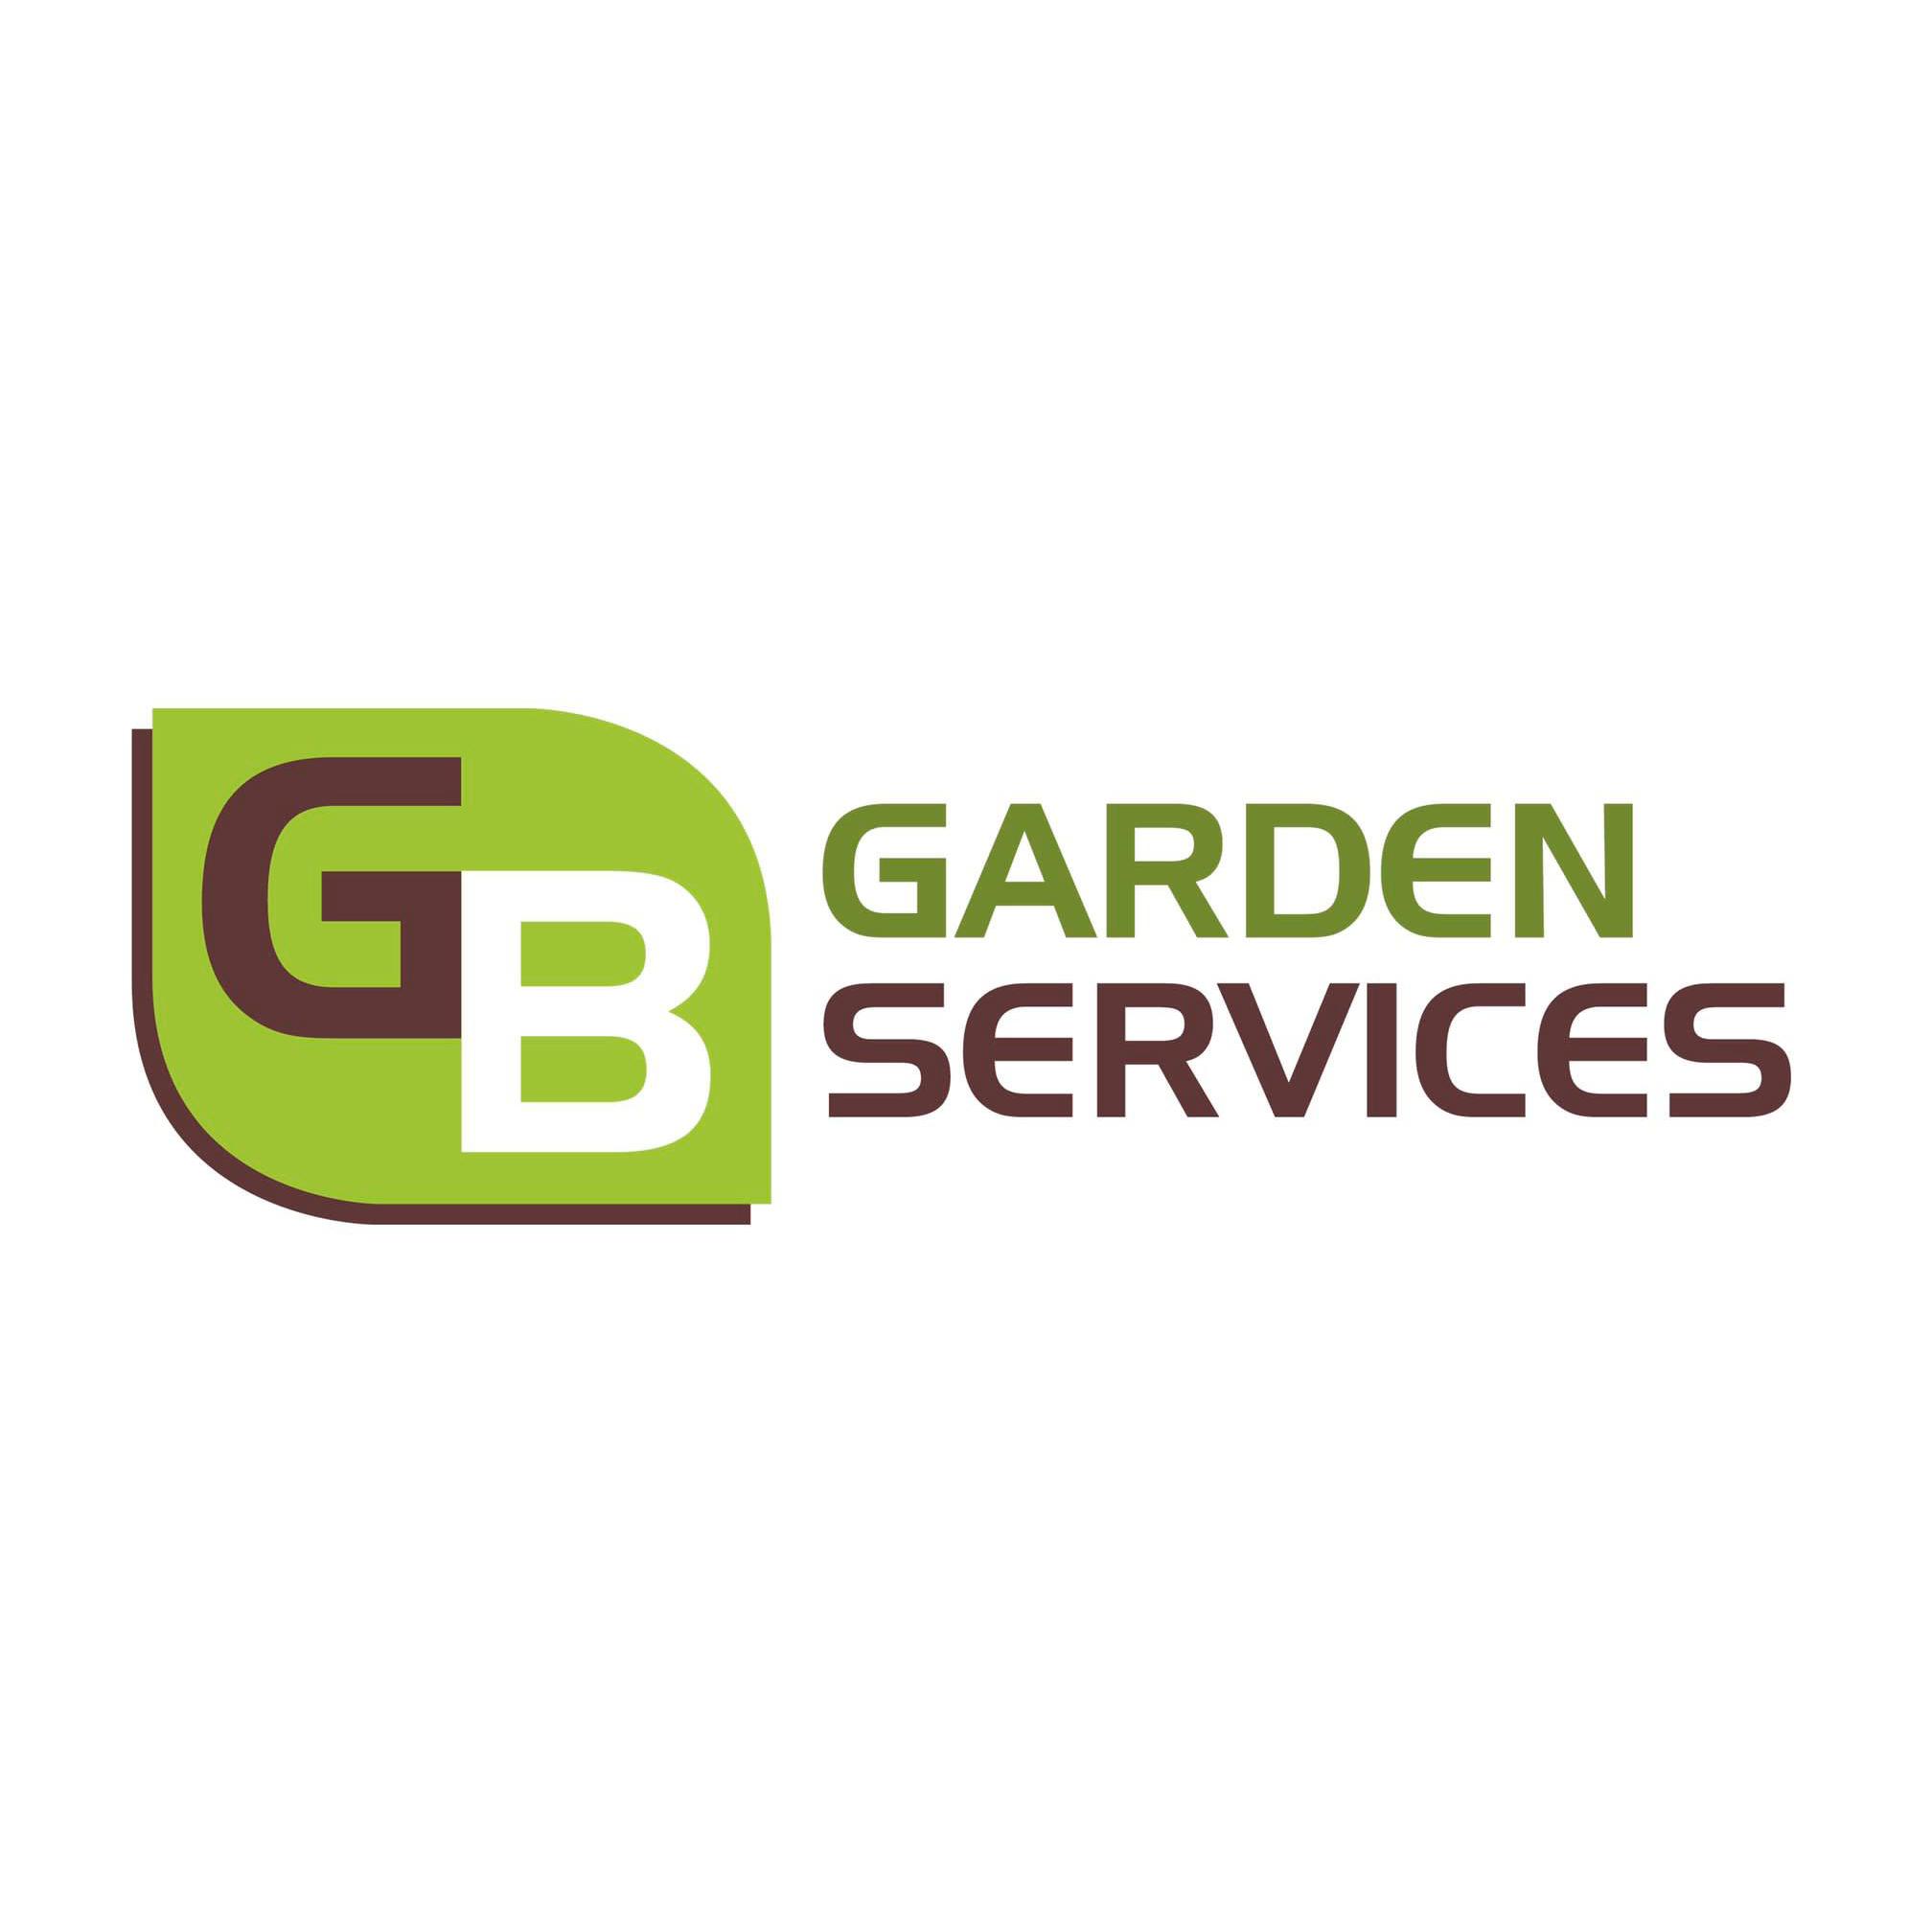 GB Garden Services Logo